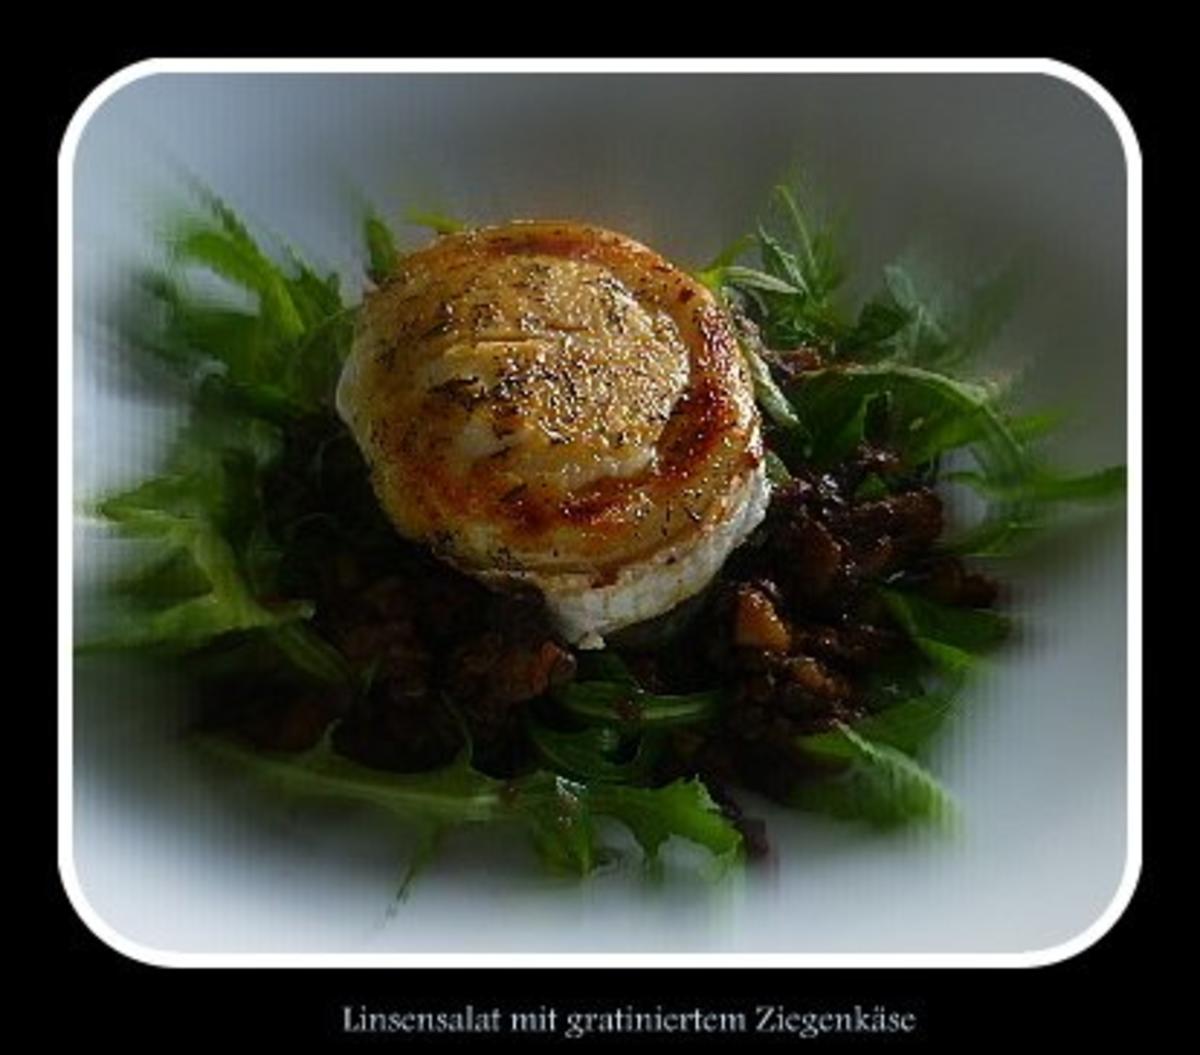 Salat von Linsen und Rucola mit gratiniertem Ziegenkäse - Rezept